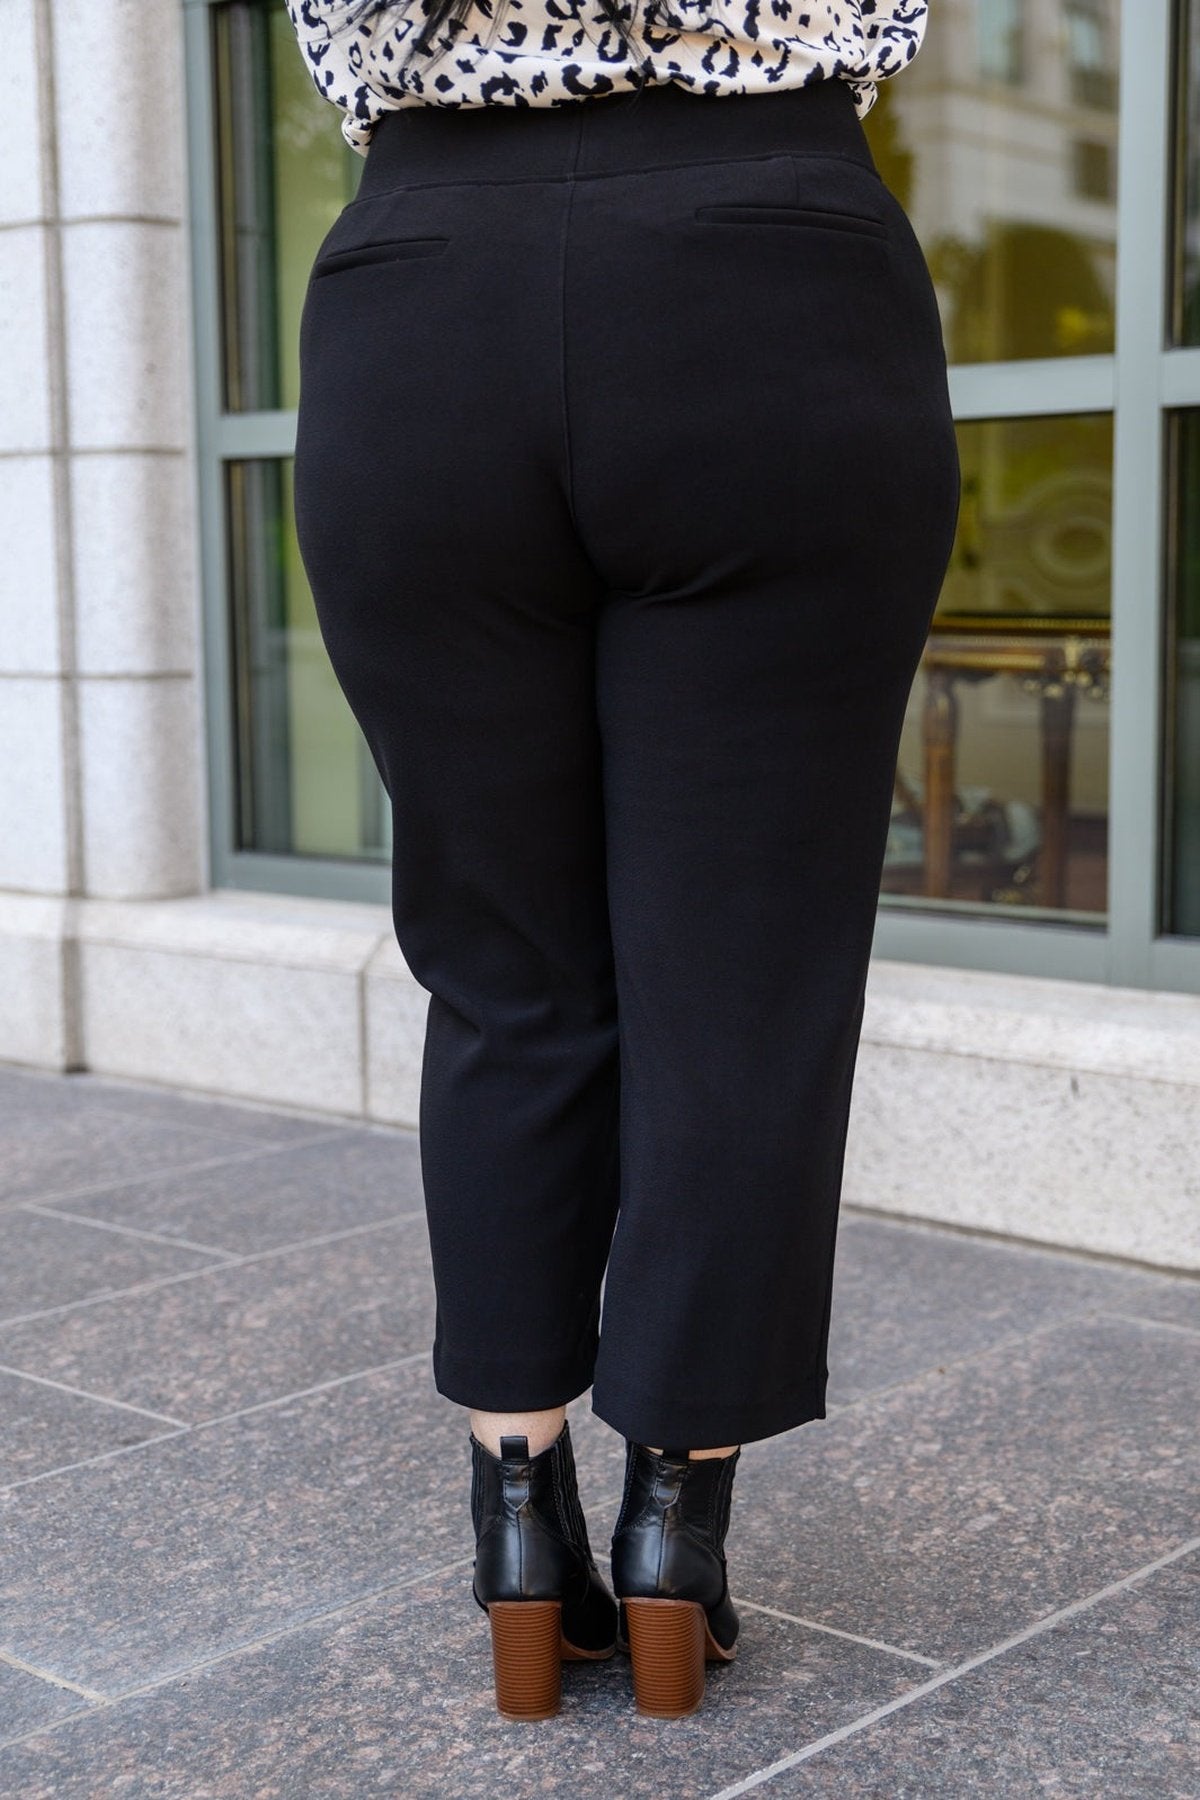 Pull On Dress Pants - Plus Size Black Pants